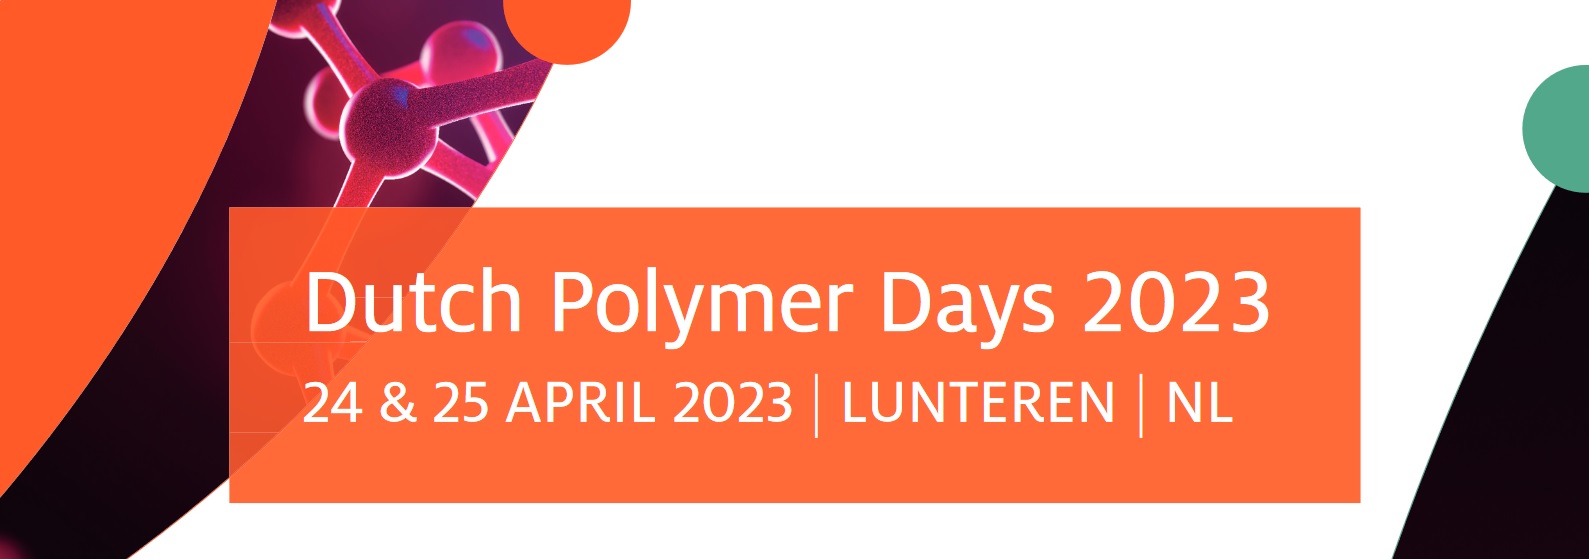 Dutch Polymer Days 2023.